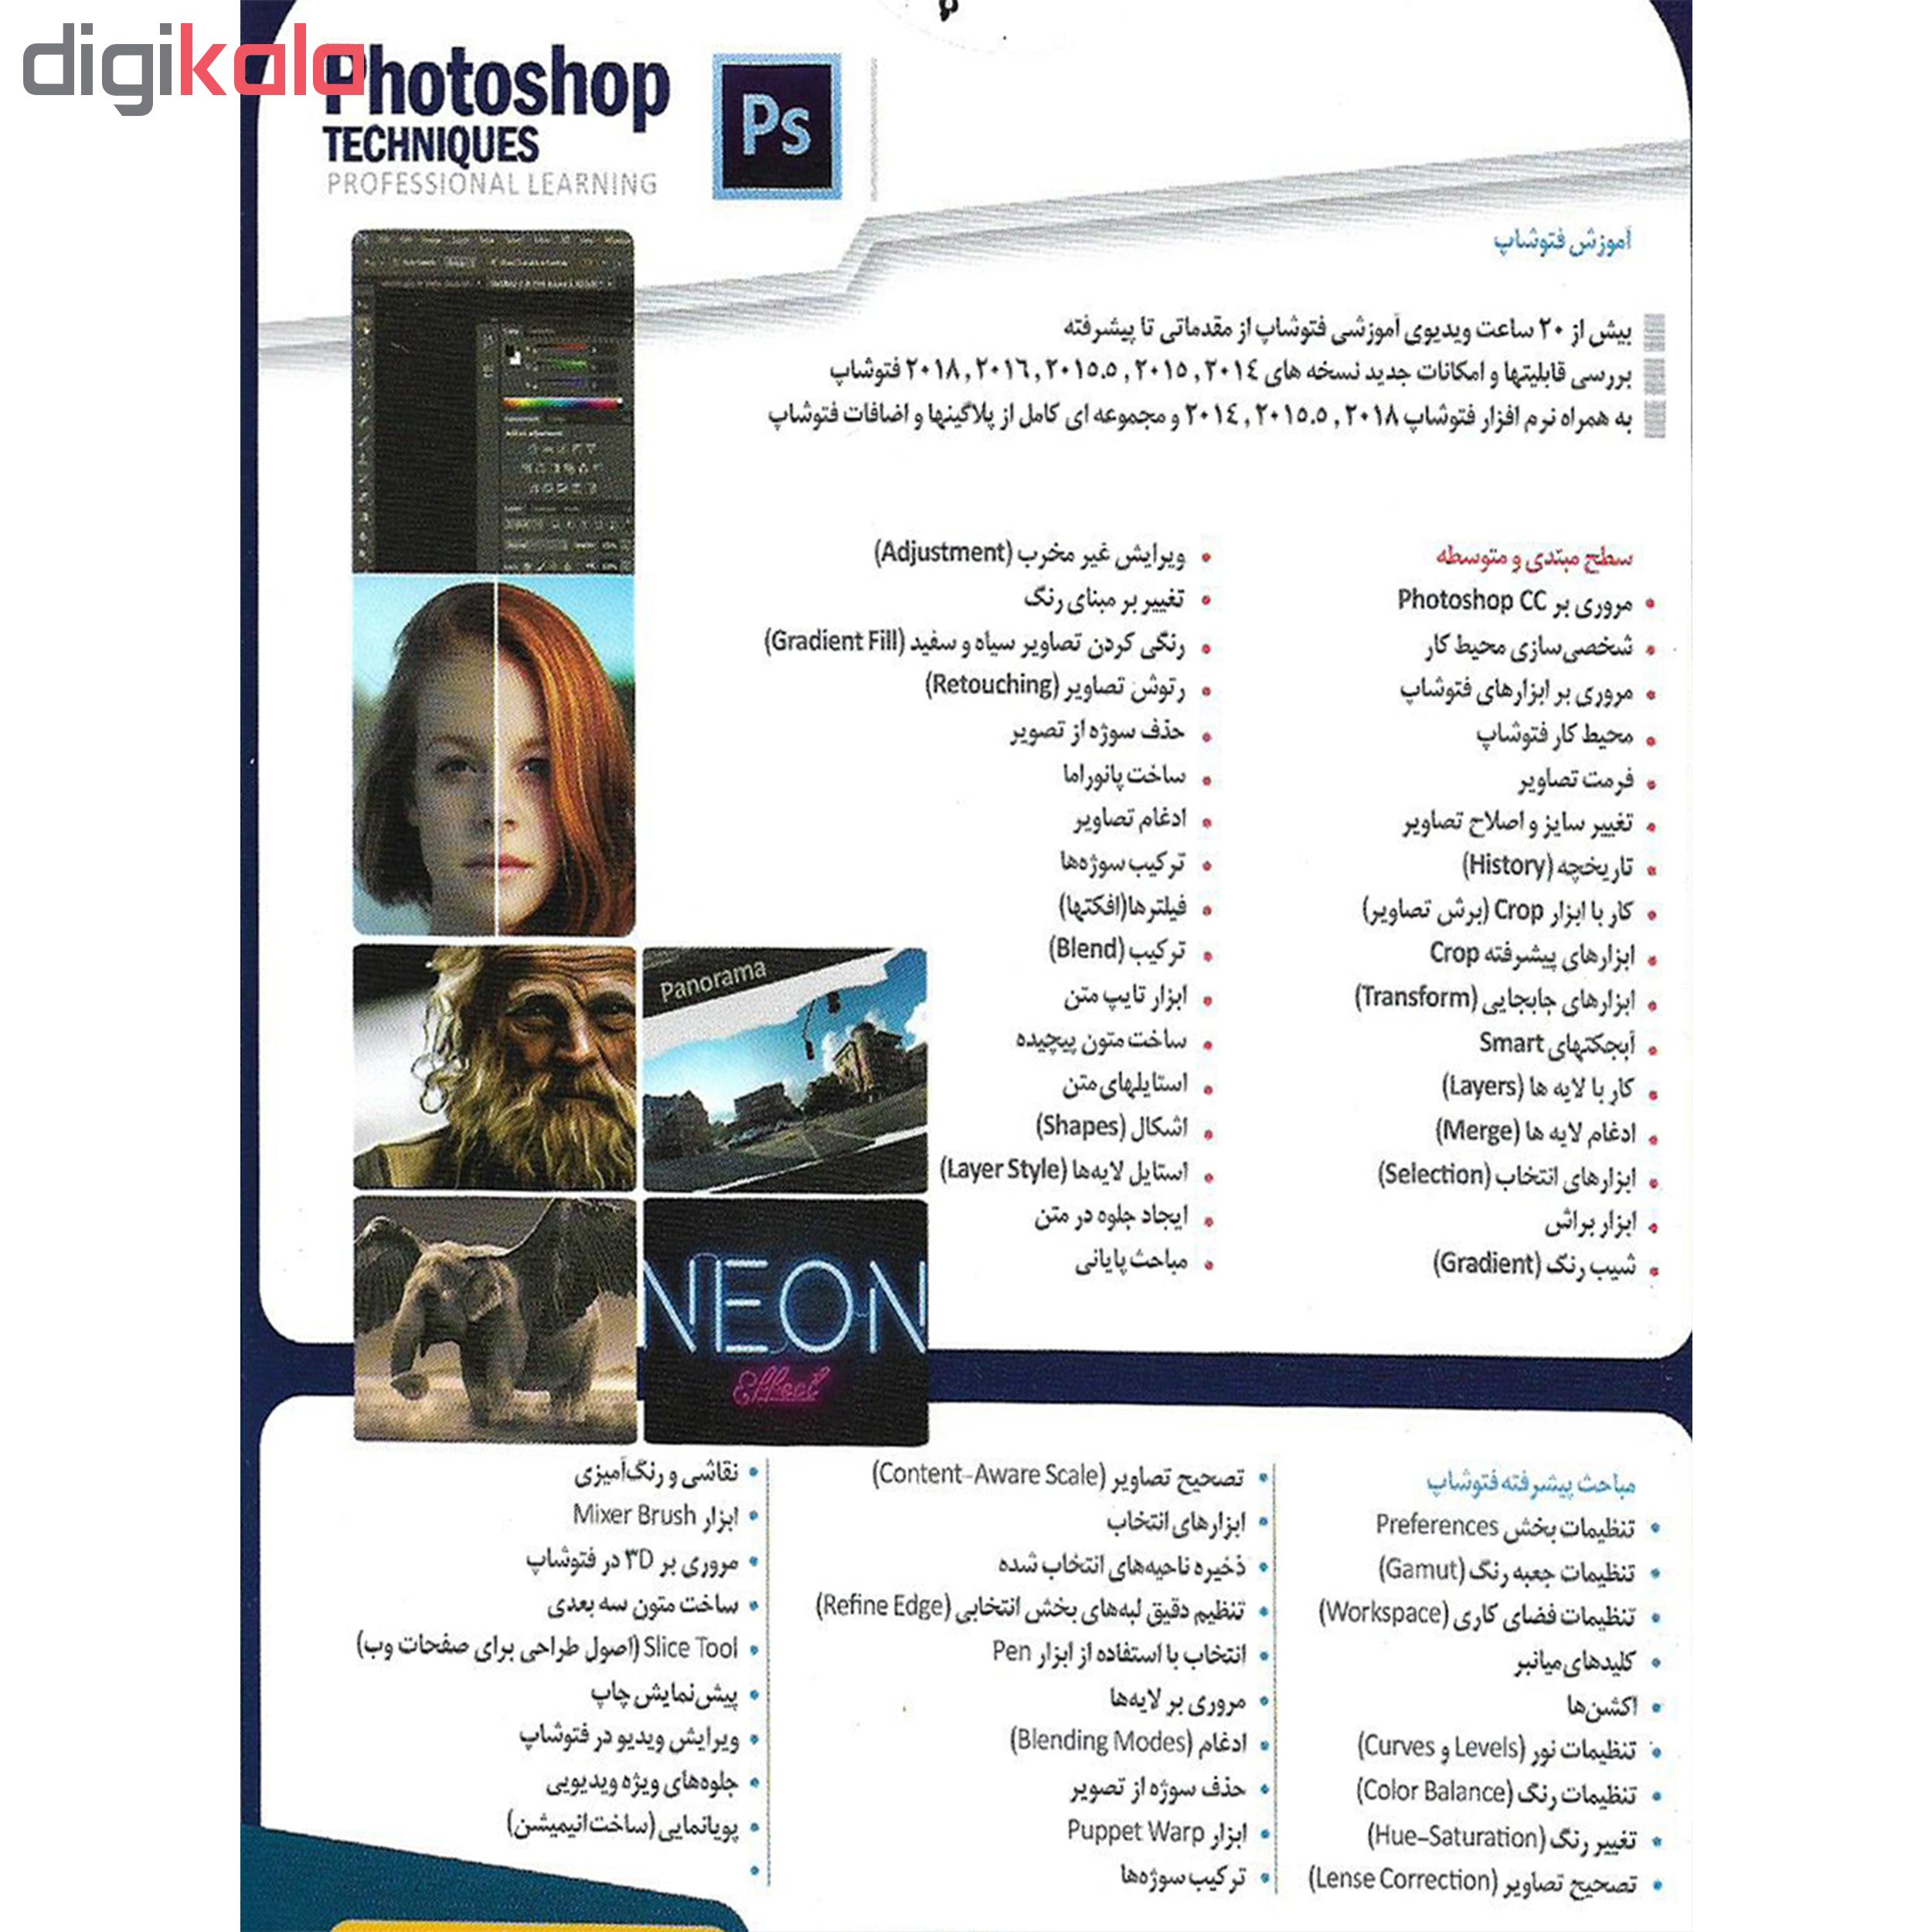 نرم افزار آموزشی PHOTOSHOP نشر درنا به همراه نرم افزار آموزشی رتوش چهره در فتوشاپ نشر پدیا سافت